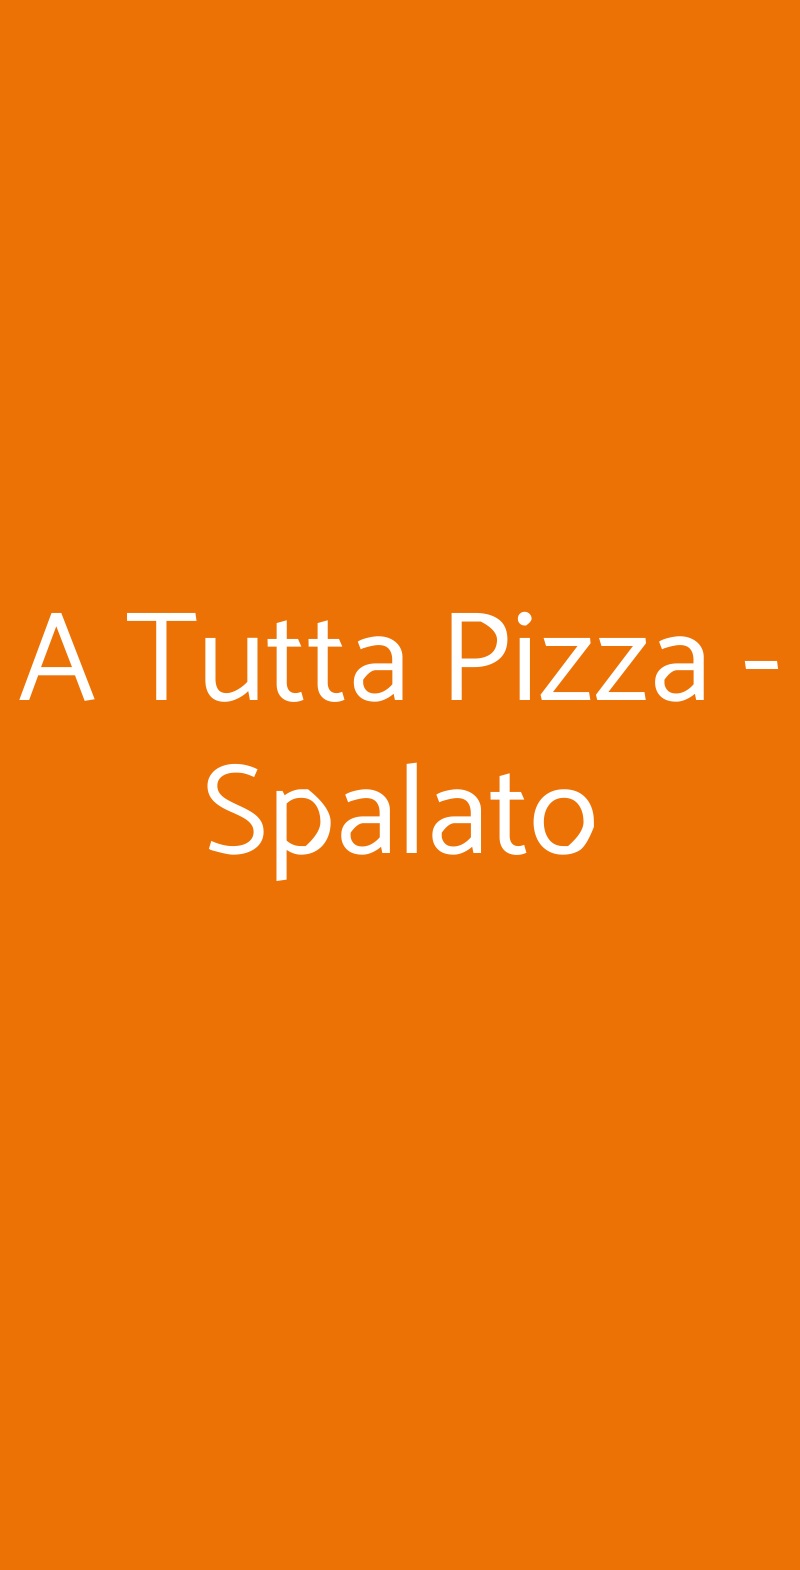 A Tutta Pizza - Spalato Macerata menù 1 pagina